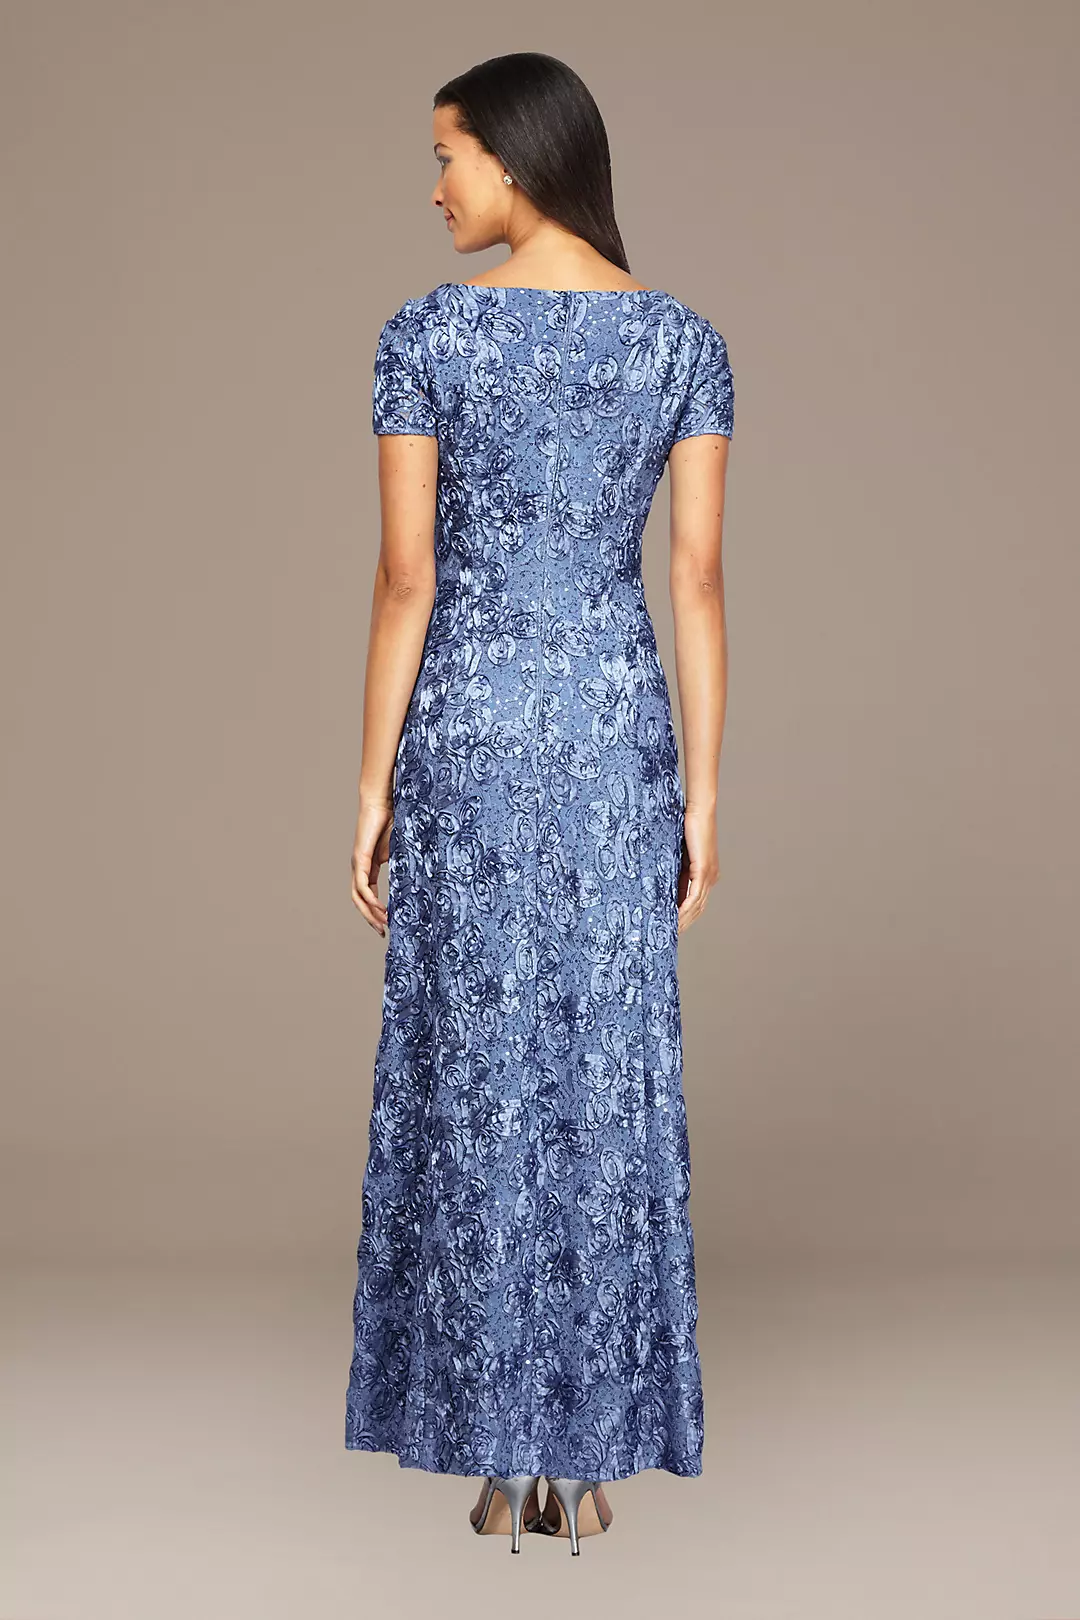 Rosette Lace Cap Sleeve A-Line Gown | David's Bridal